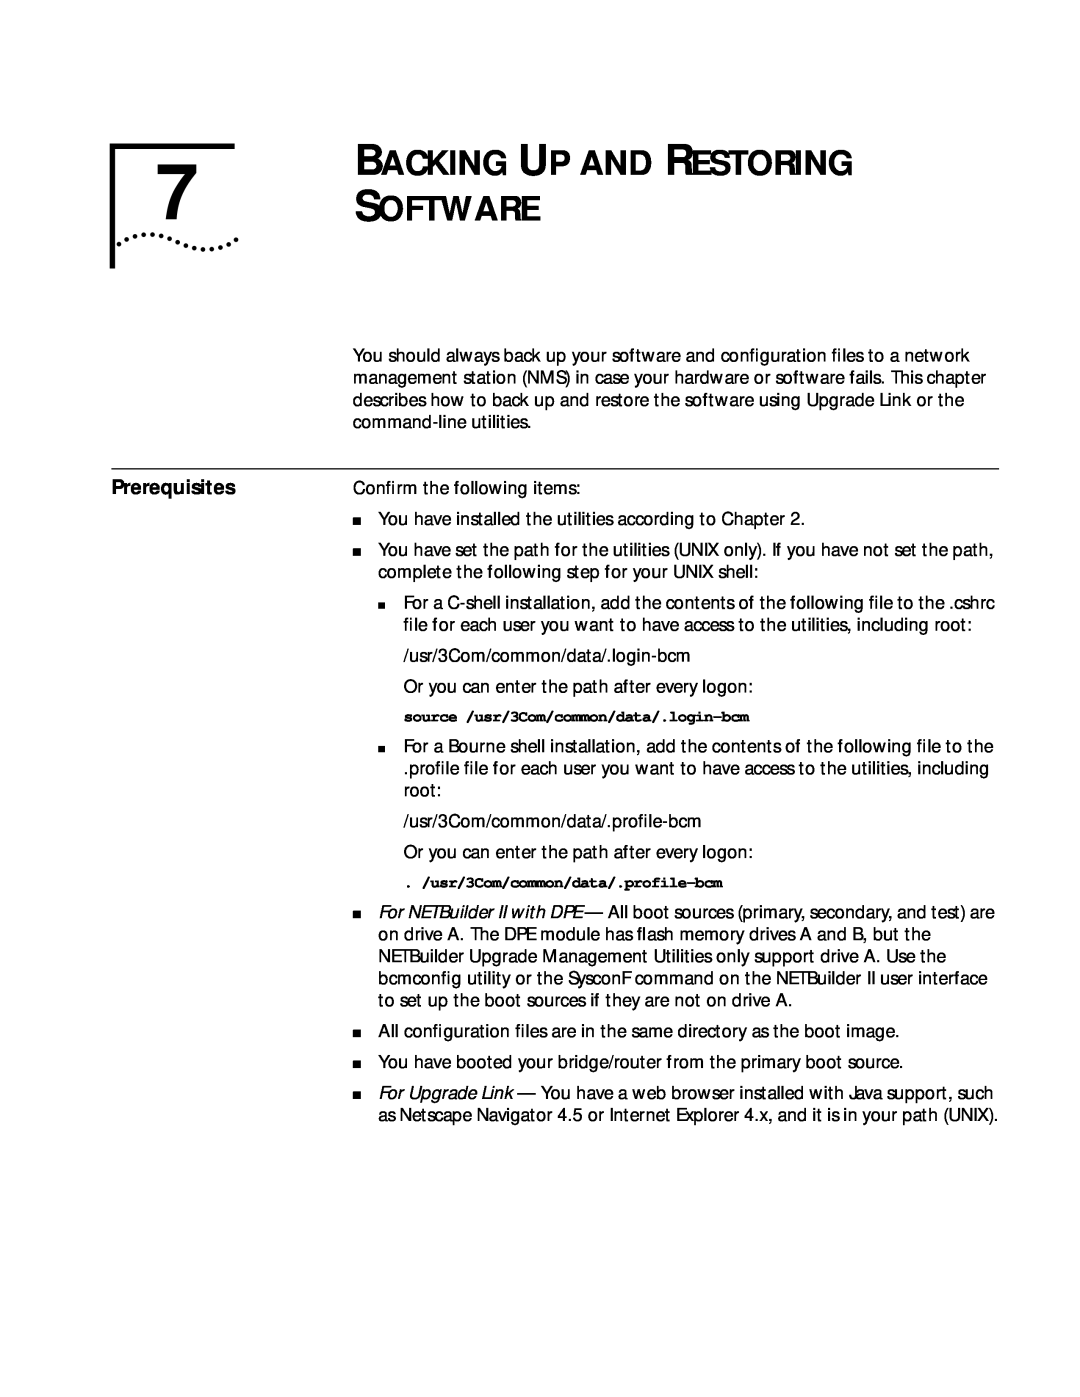 3Com ENTERPRISE OS 11.3 manual BACKING UP AND RESTORING 7 SOFTWARE, Prerequisites 